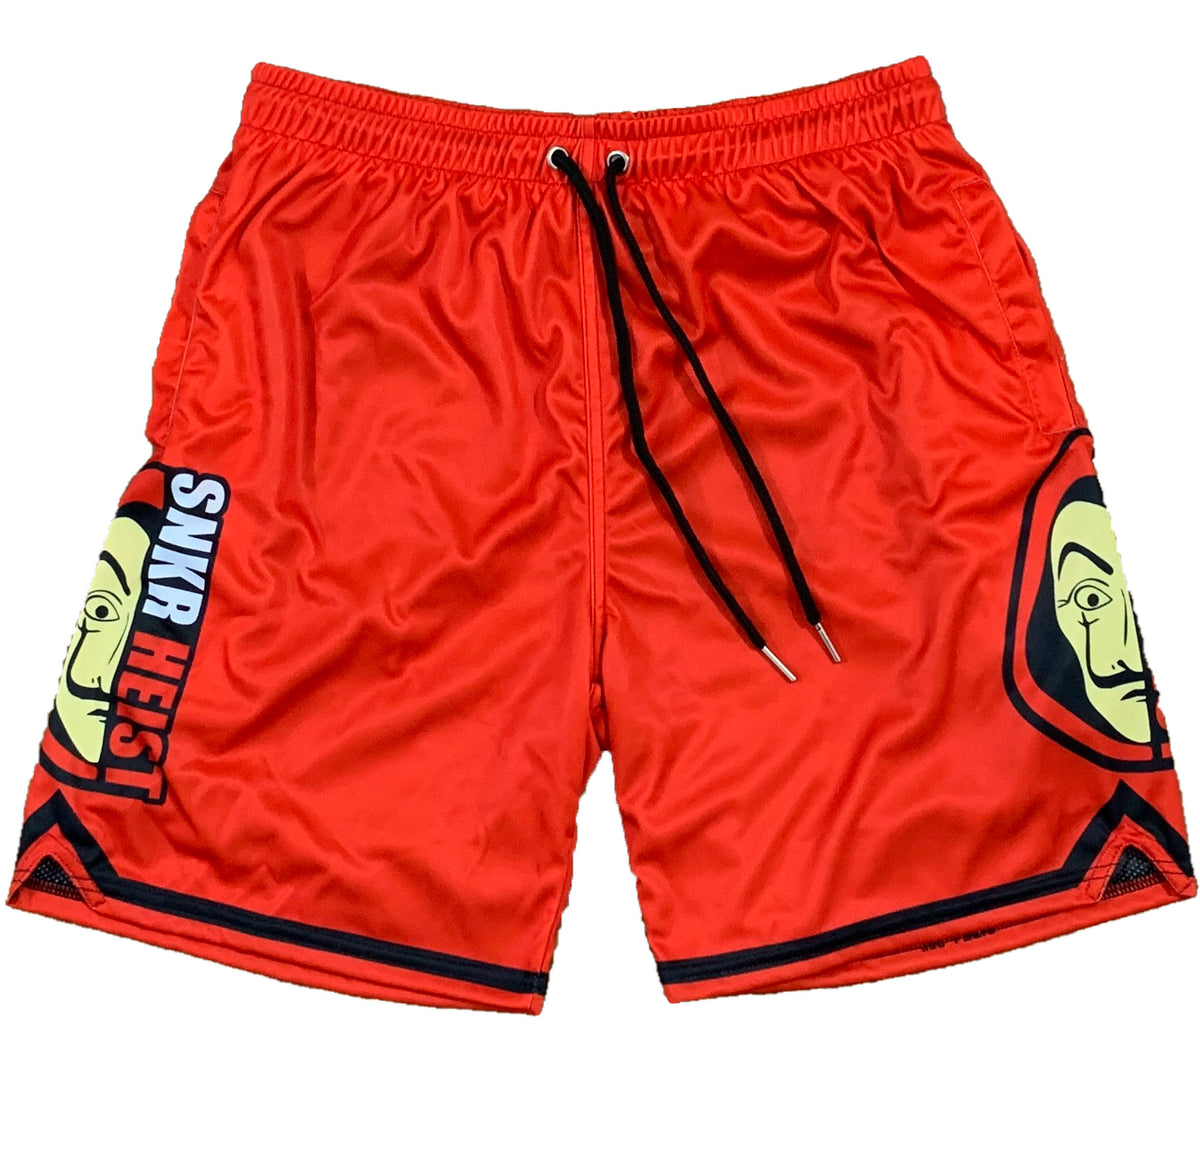 SNKR HEIST (red) – Mperial Sportswear